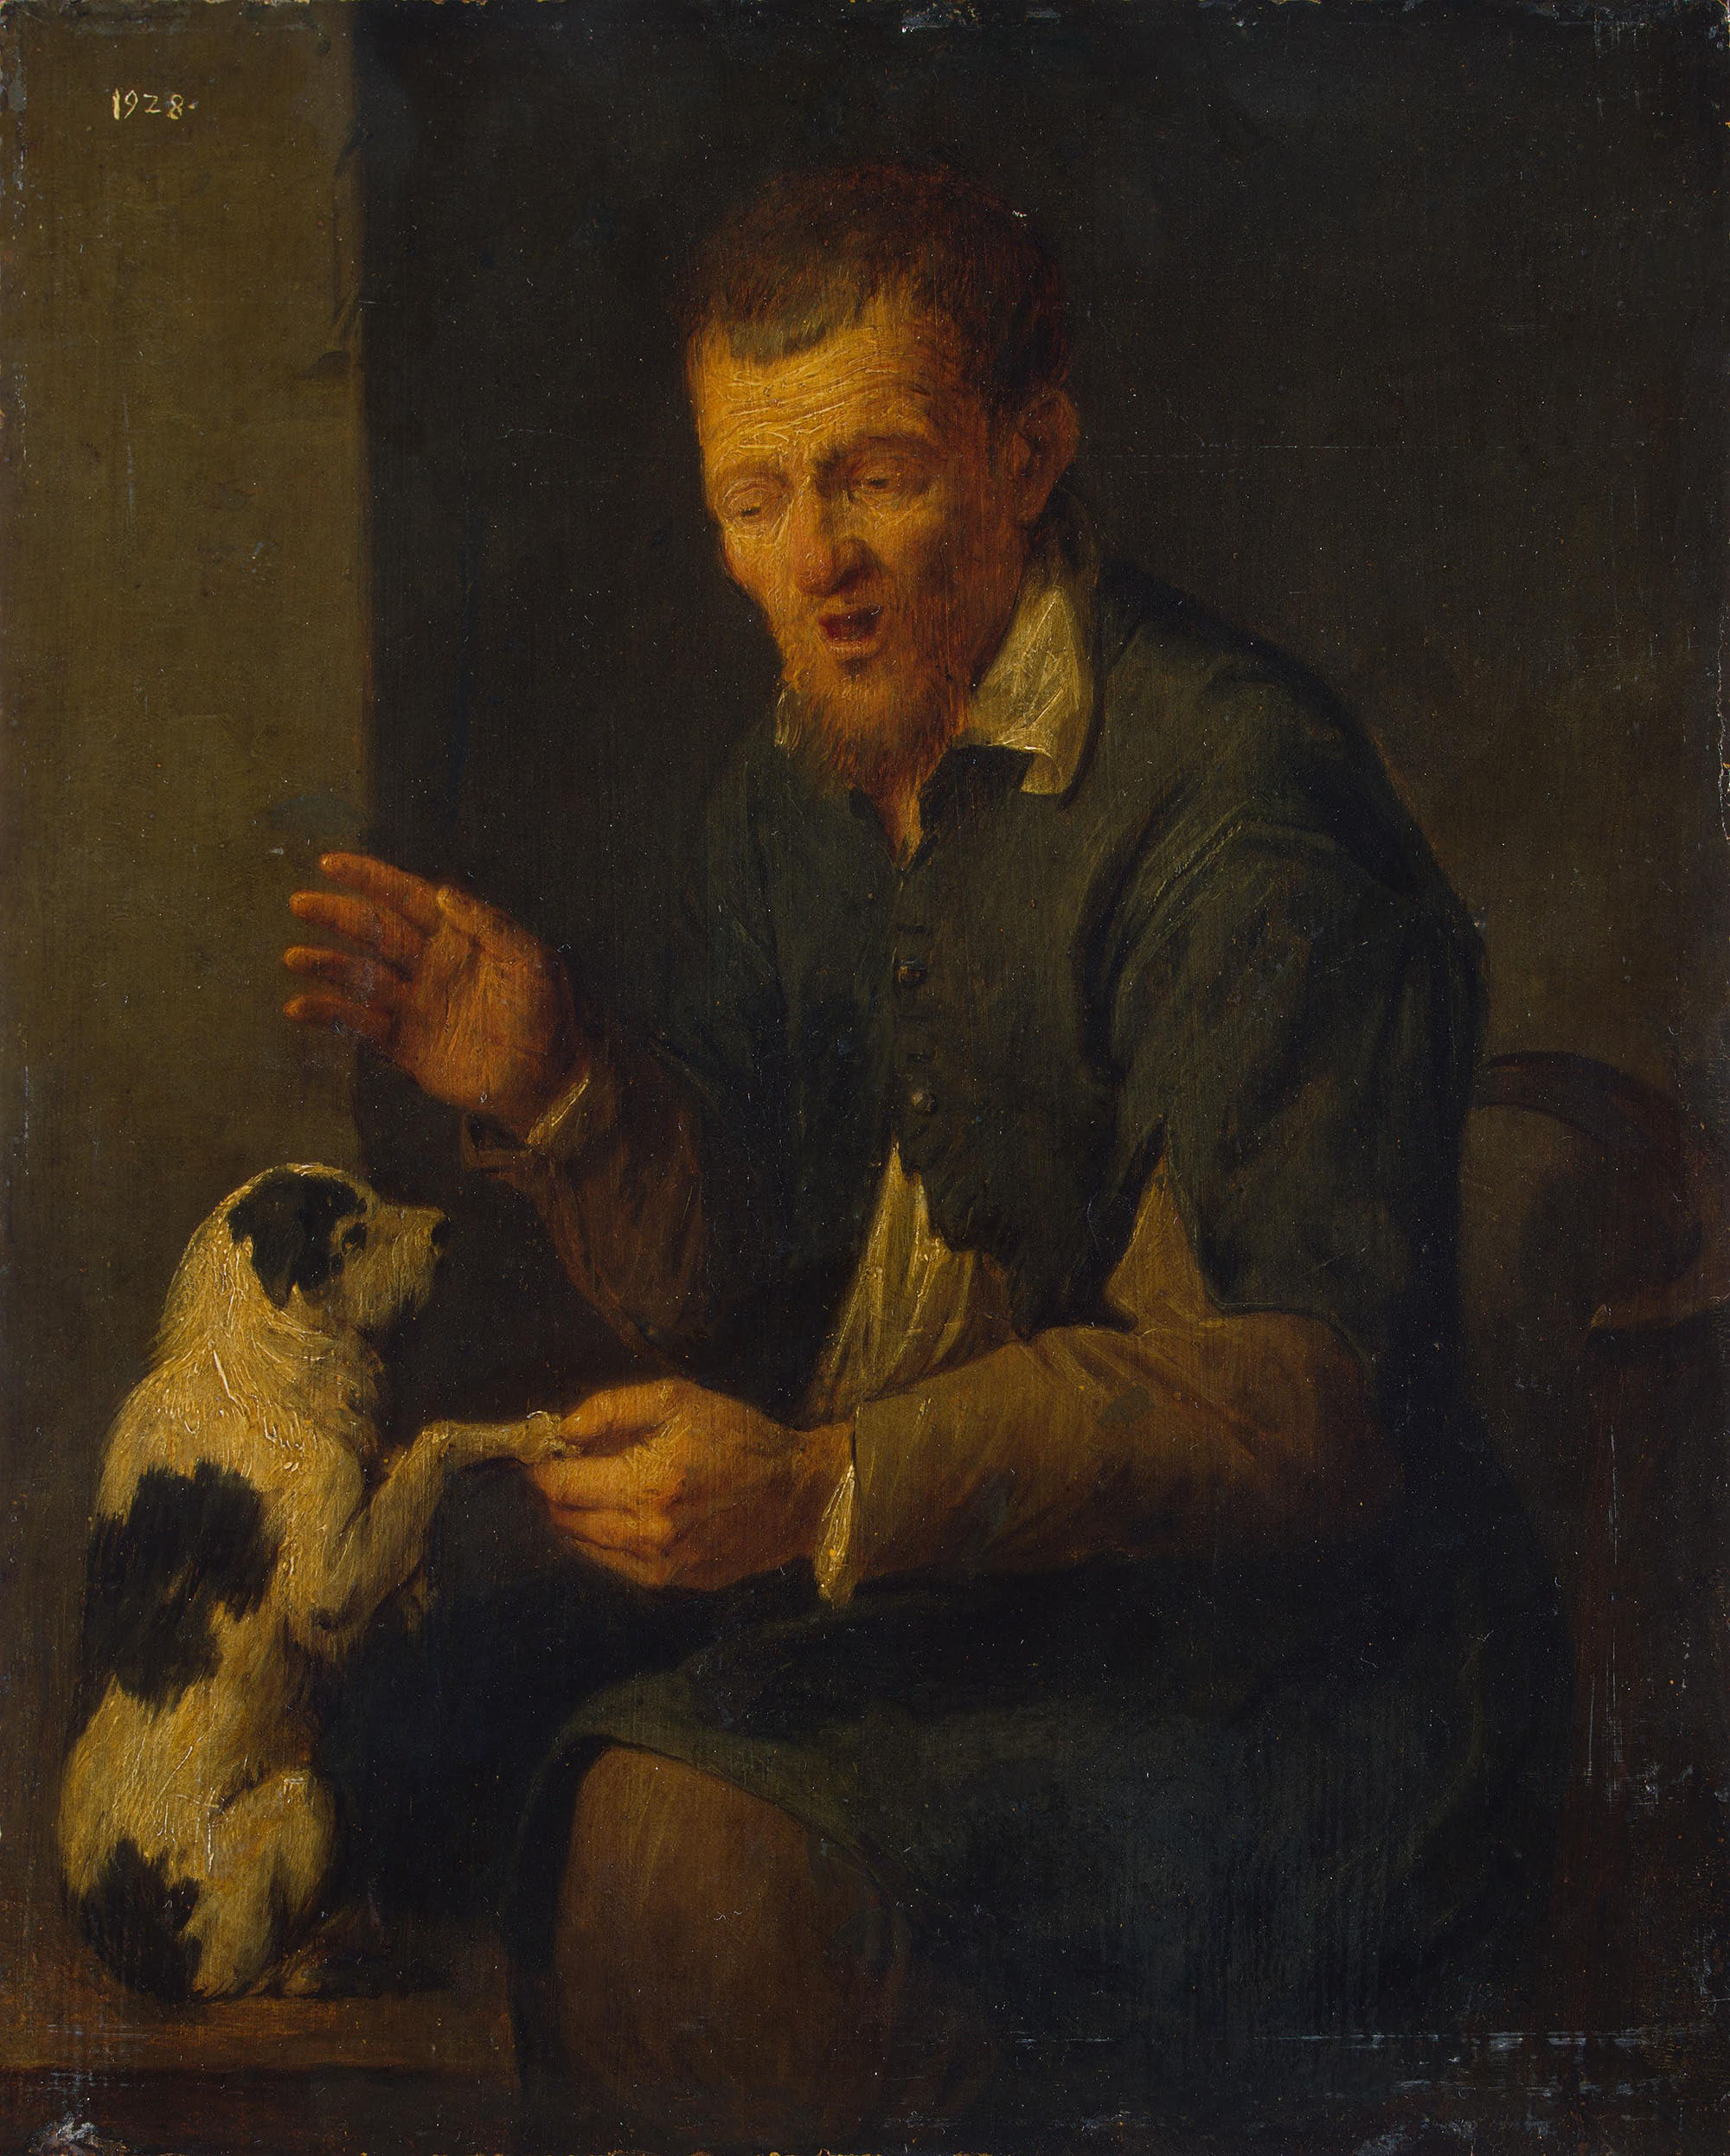 Давид Рейкарт III. "Крестьянин с собакой". 1640-е.